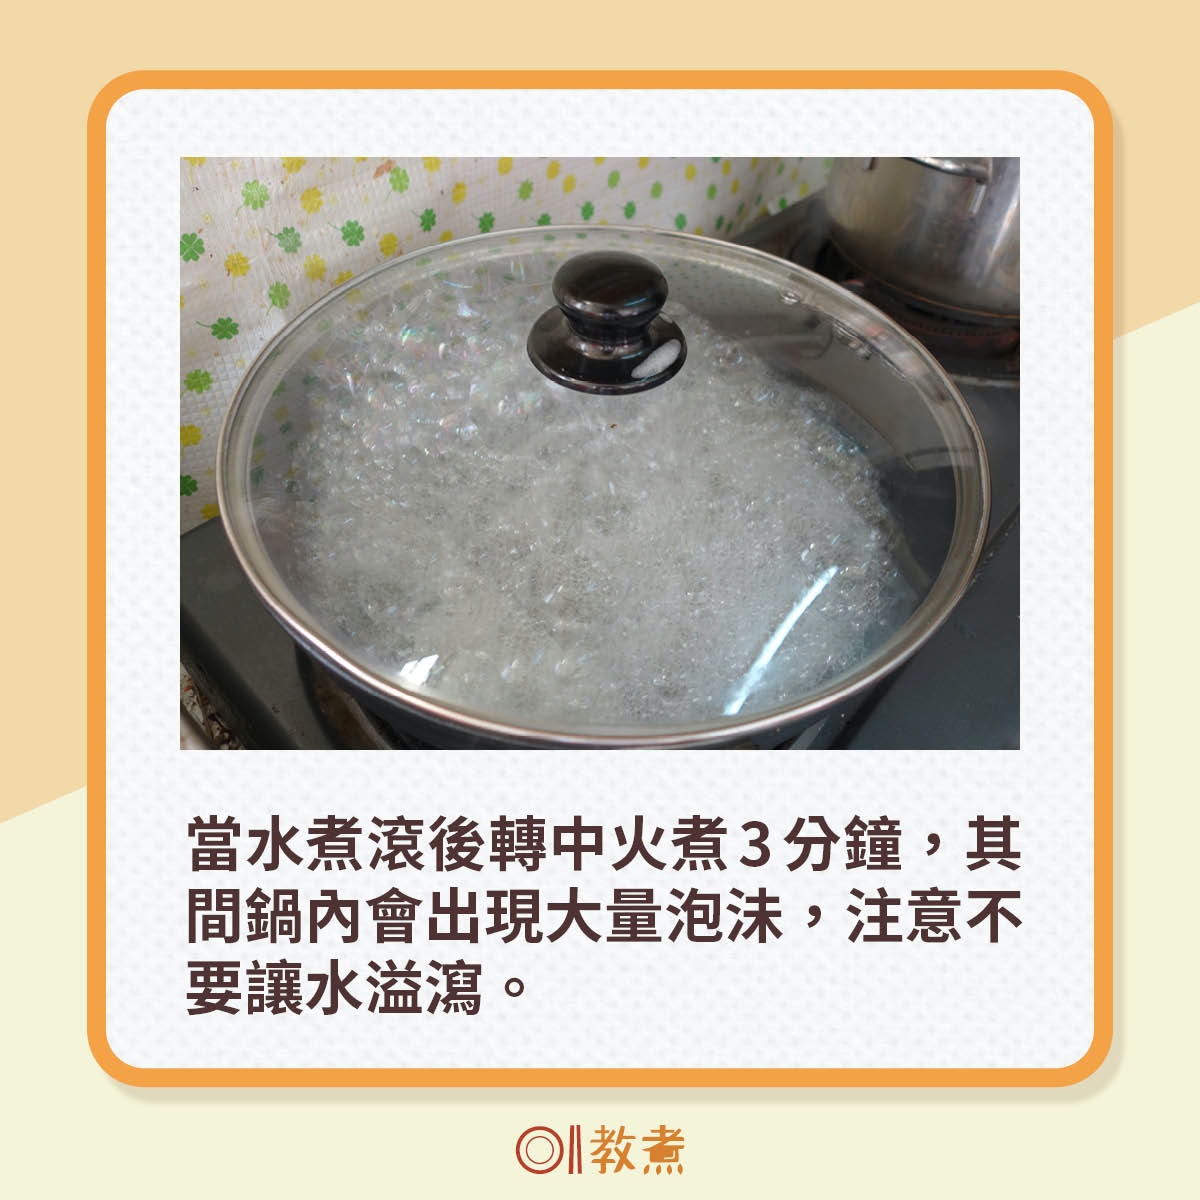 當水煮滾後轉中火煮3分鐘，其間鍋內會出現大量泡沬，注意不要讓水溢瀉。